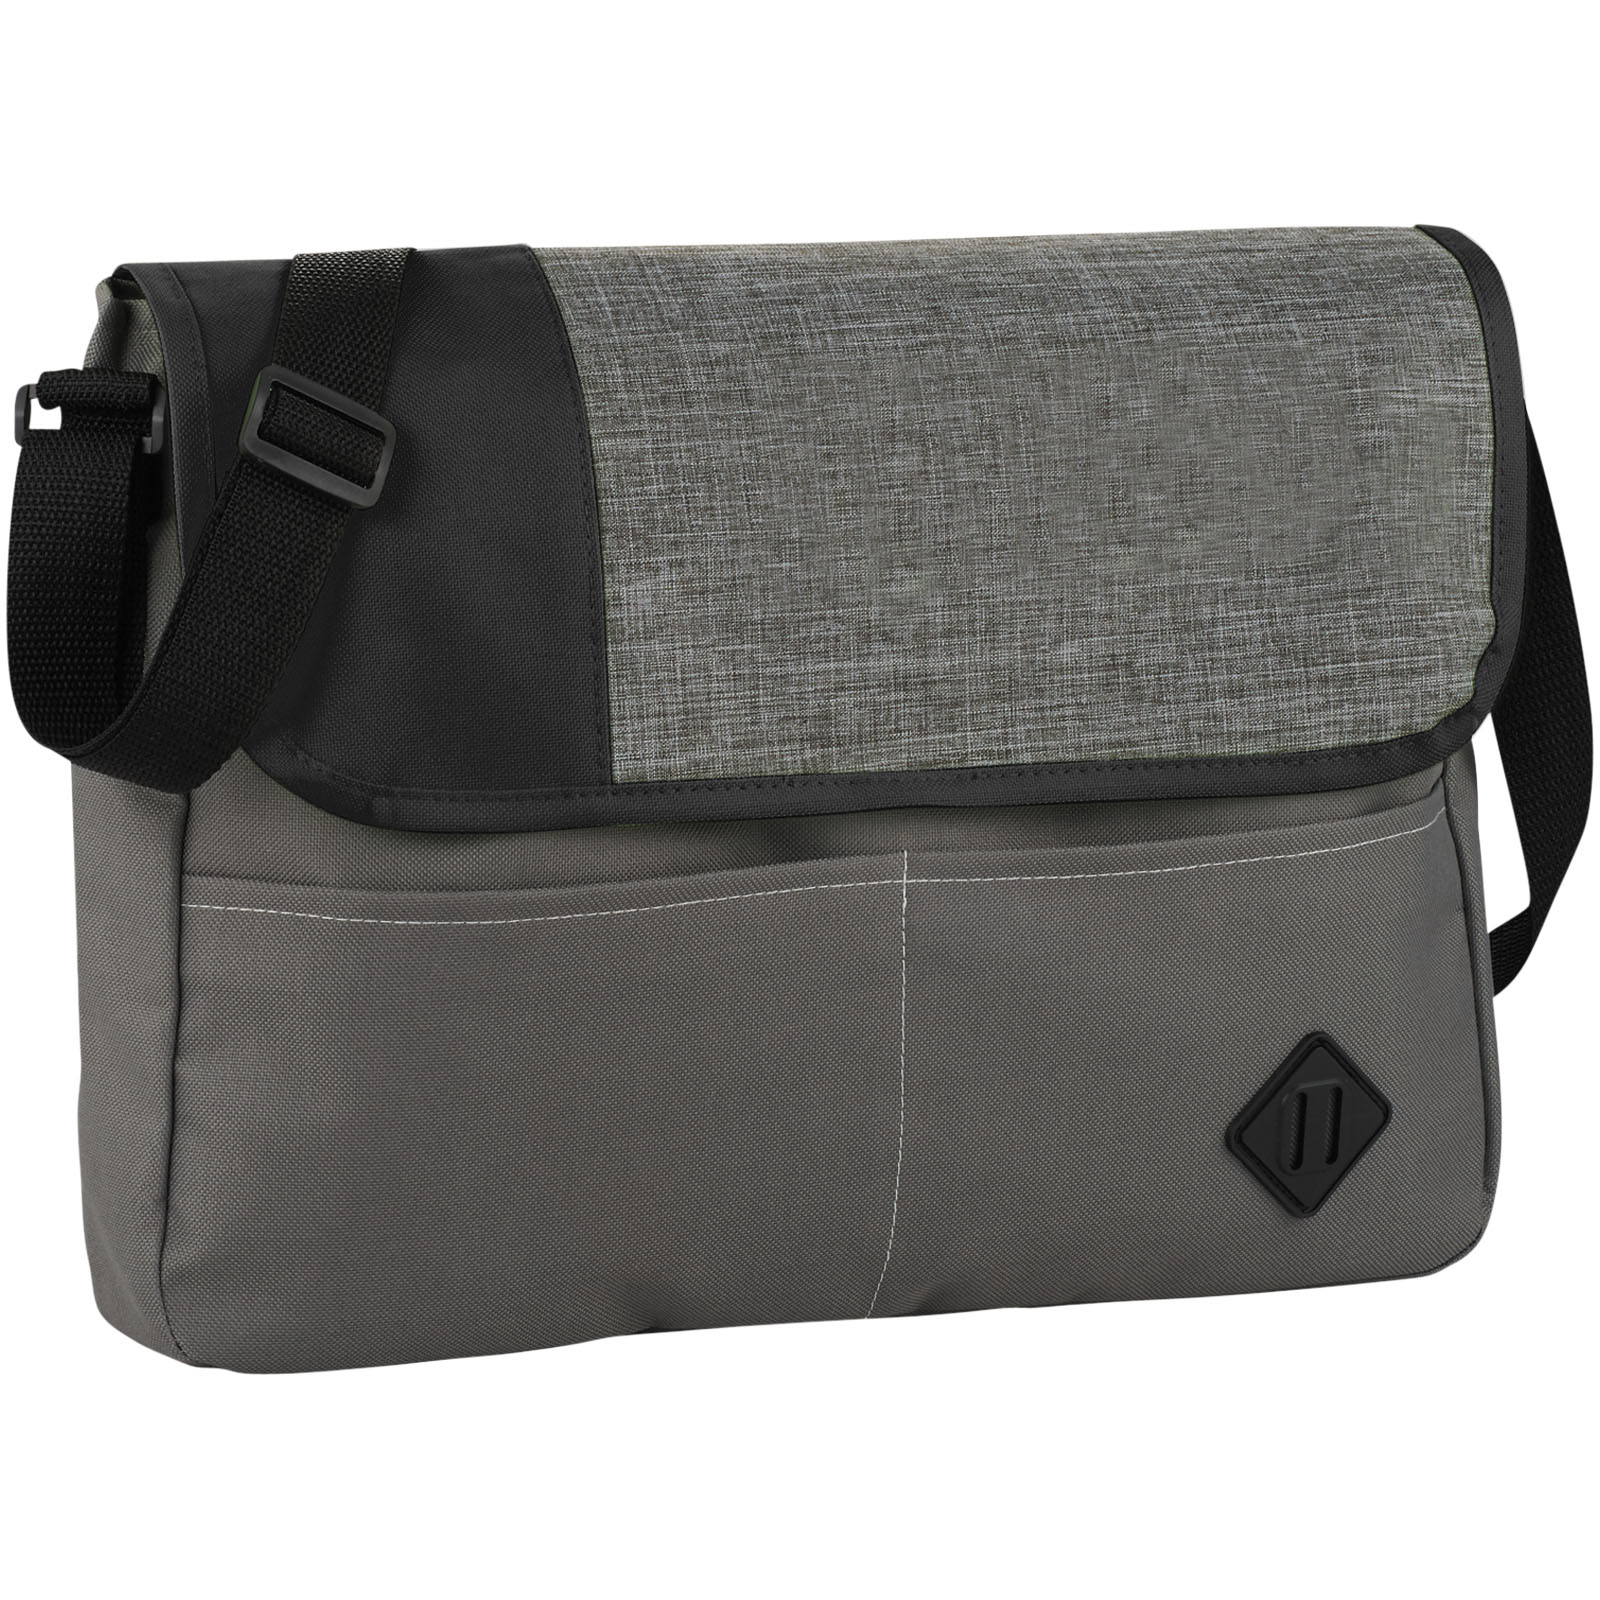 Adjustable Strap Messenger Bag - Pelsall